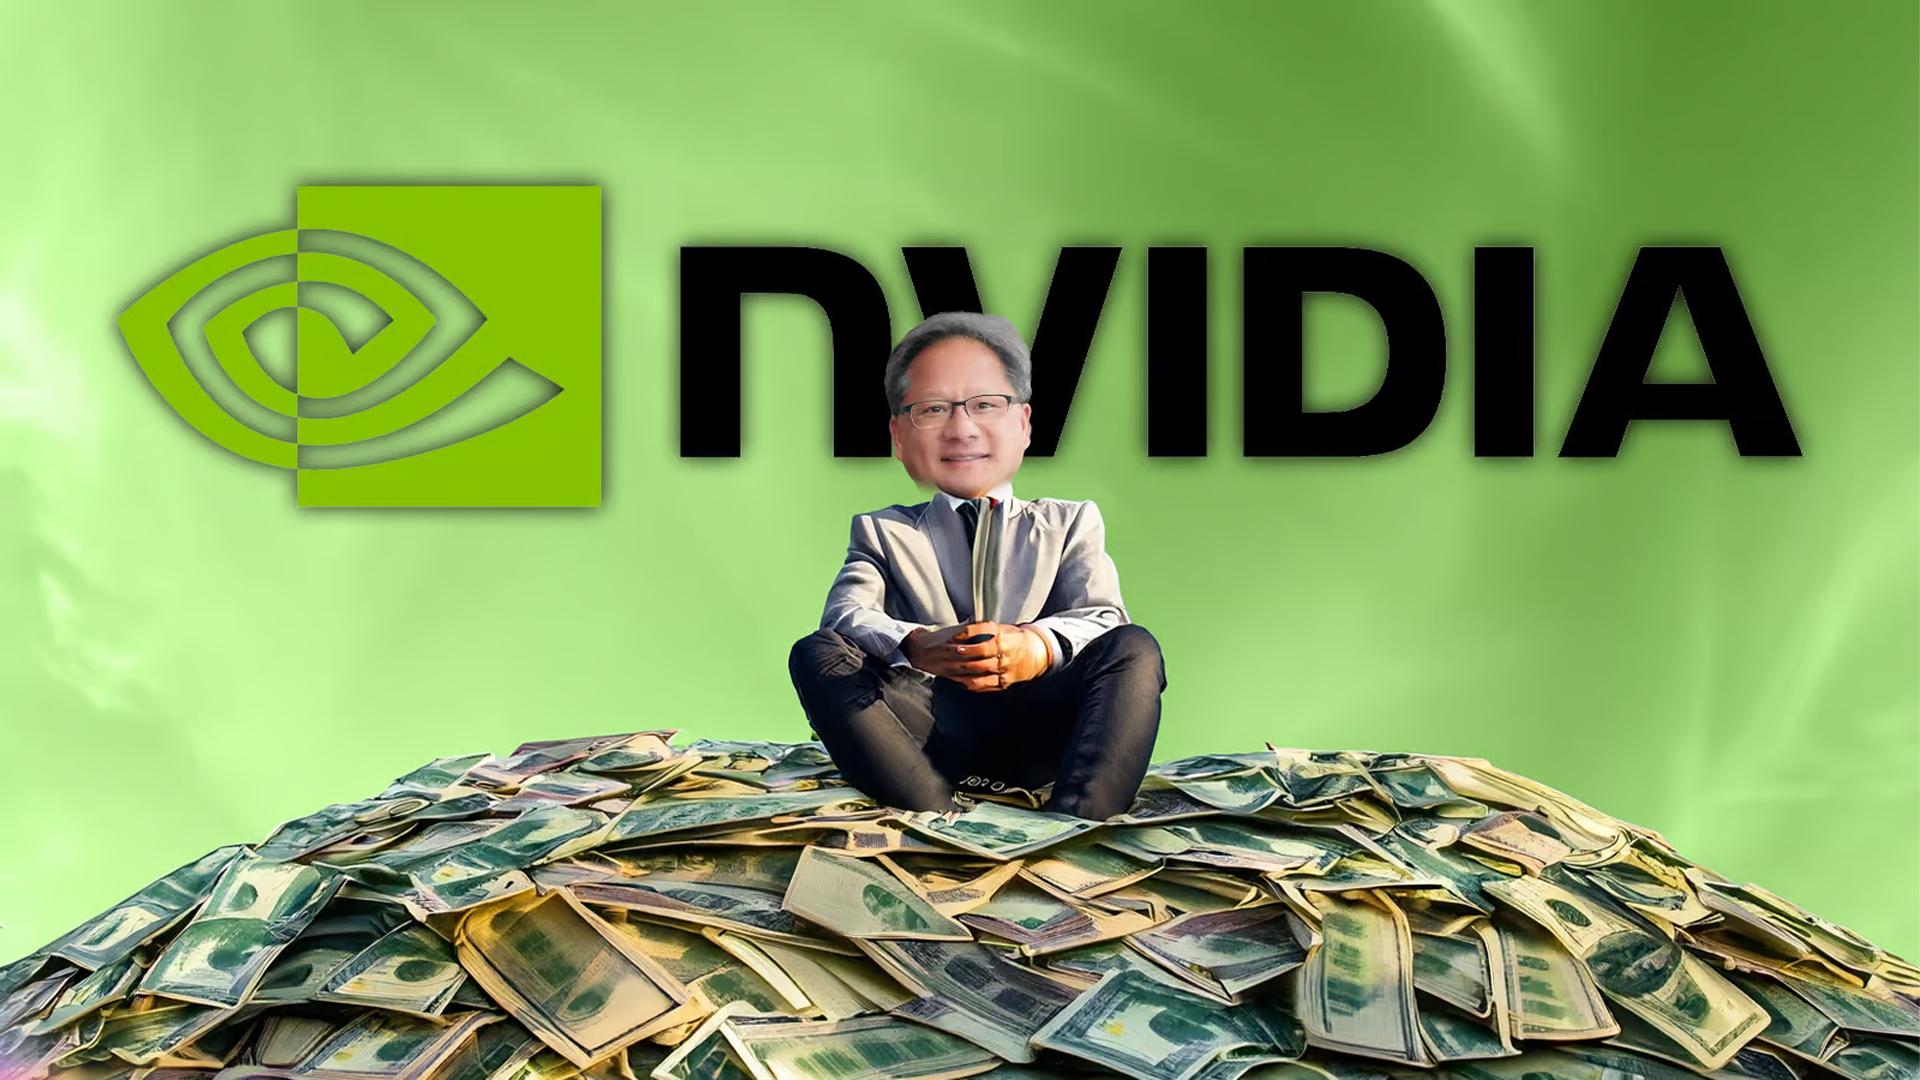 Nvidia hốt bạc nhờ cơn sốt về AI, trở thành doanh nghiệp tỷ đô với việc buôn "cuốc xẻng"